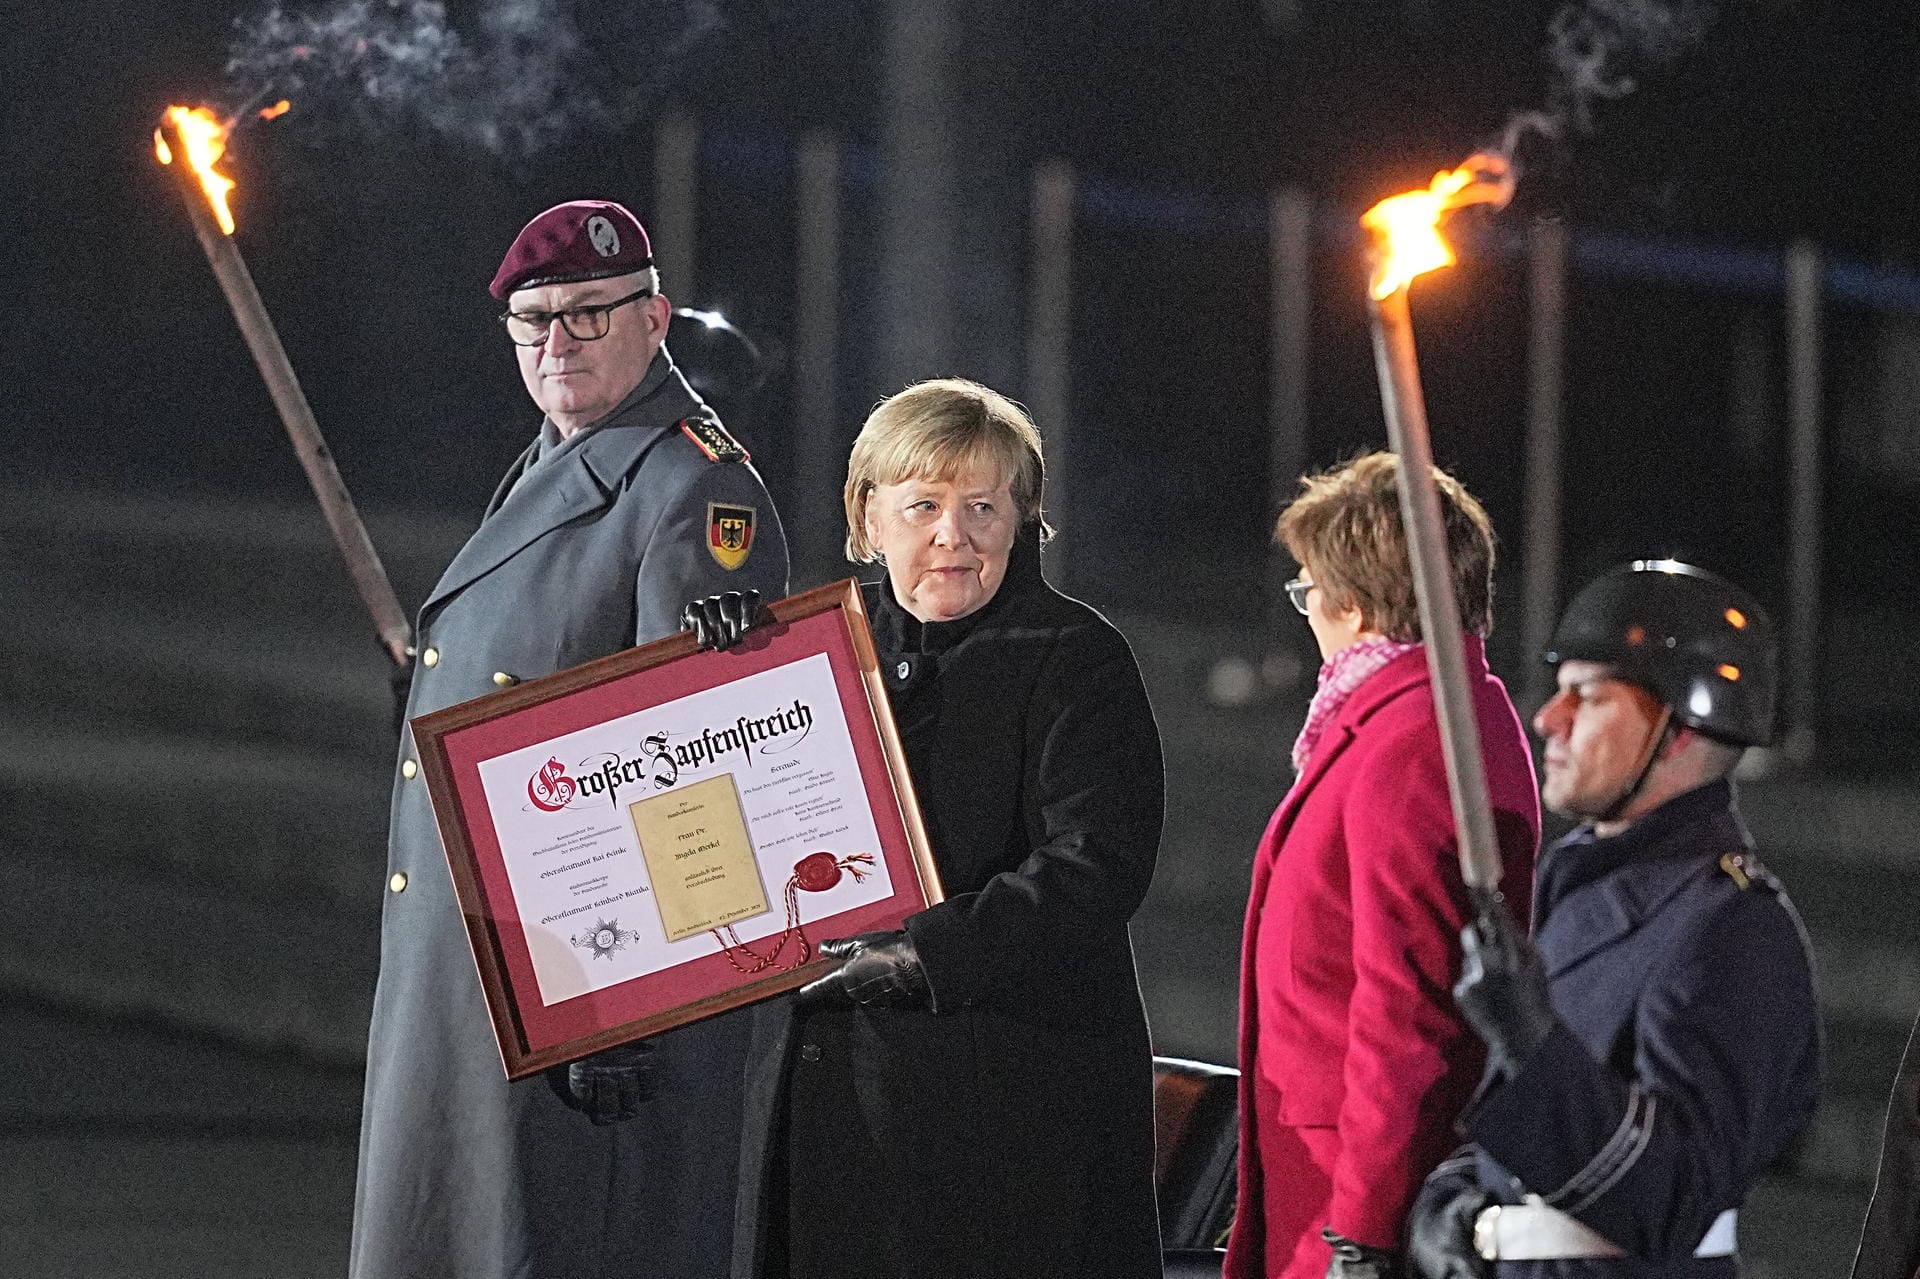 Verabschiedung durch die Bundeswehr: Der Kanzlerin wird eine Urkunde des Wachbataillons des Bundesministeriums für Verteidigung überreicht.